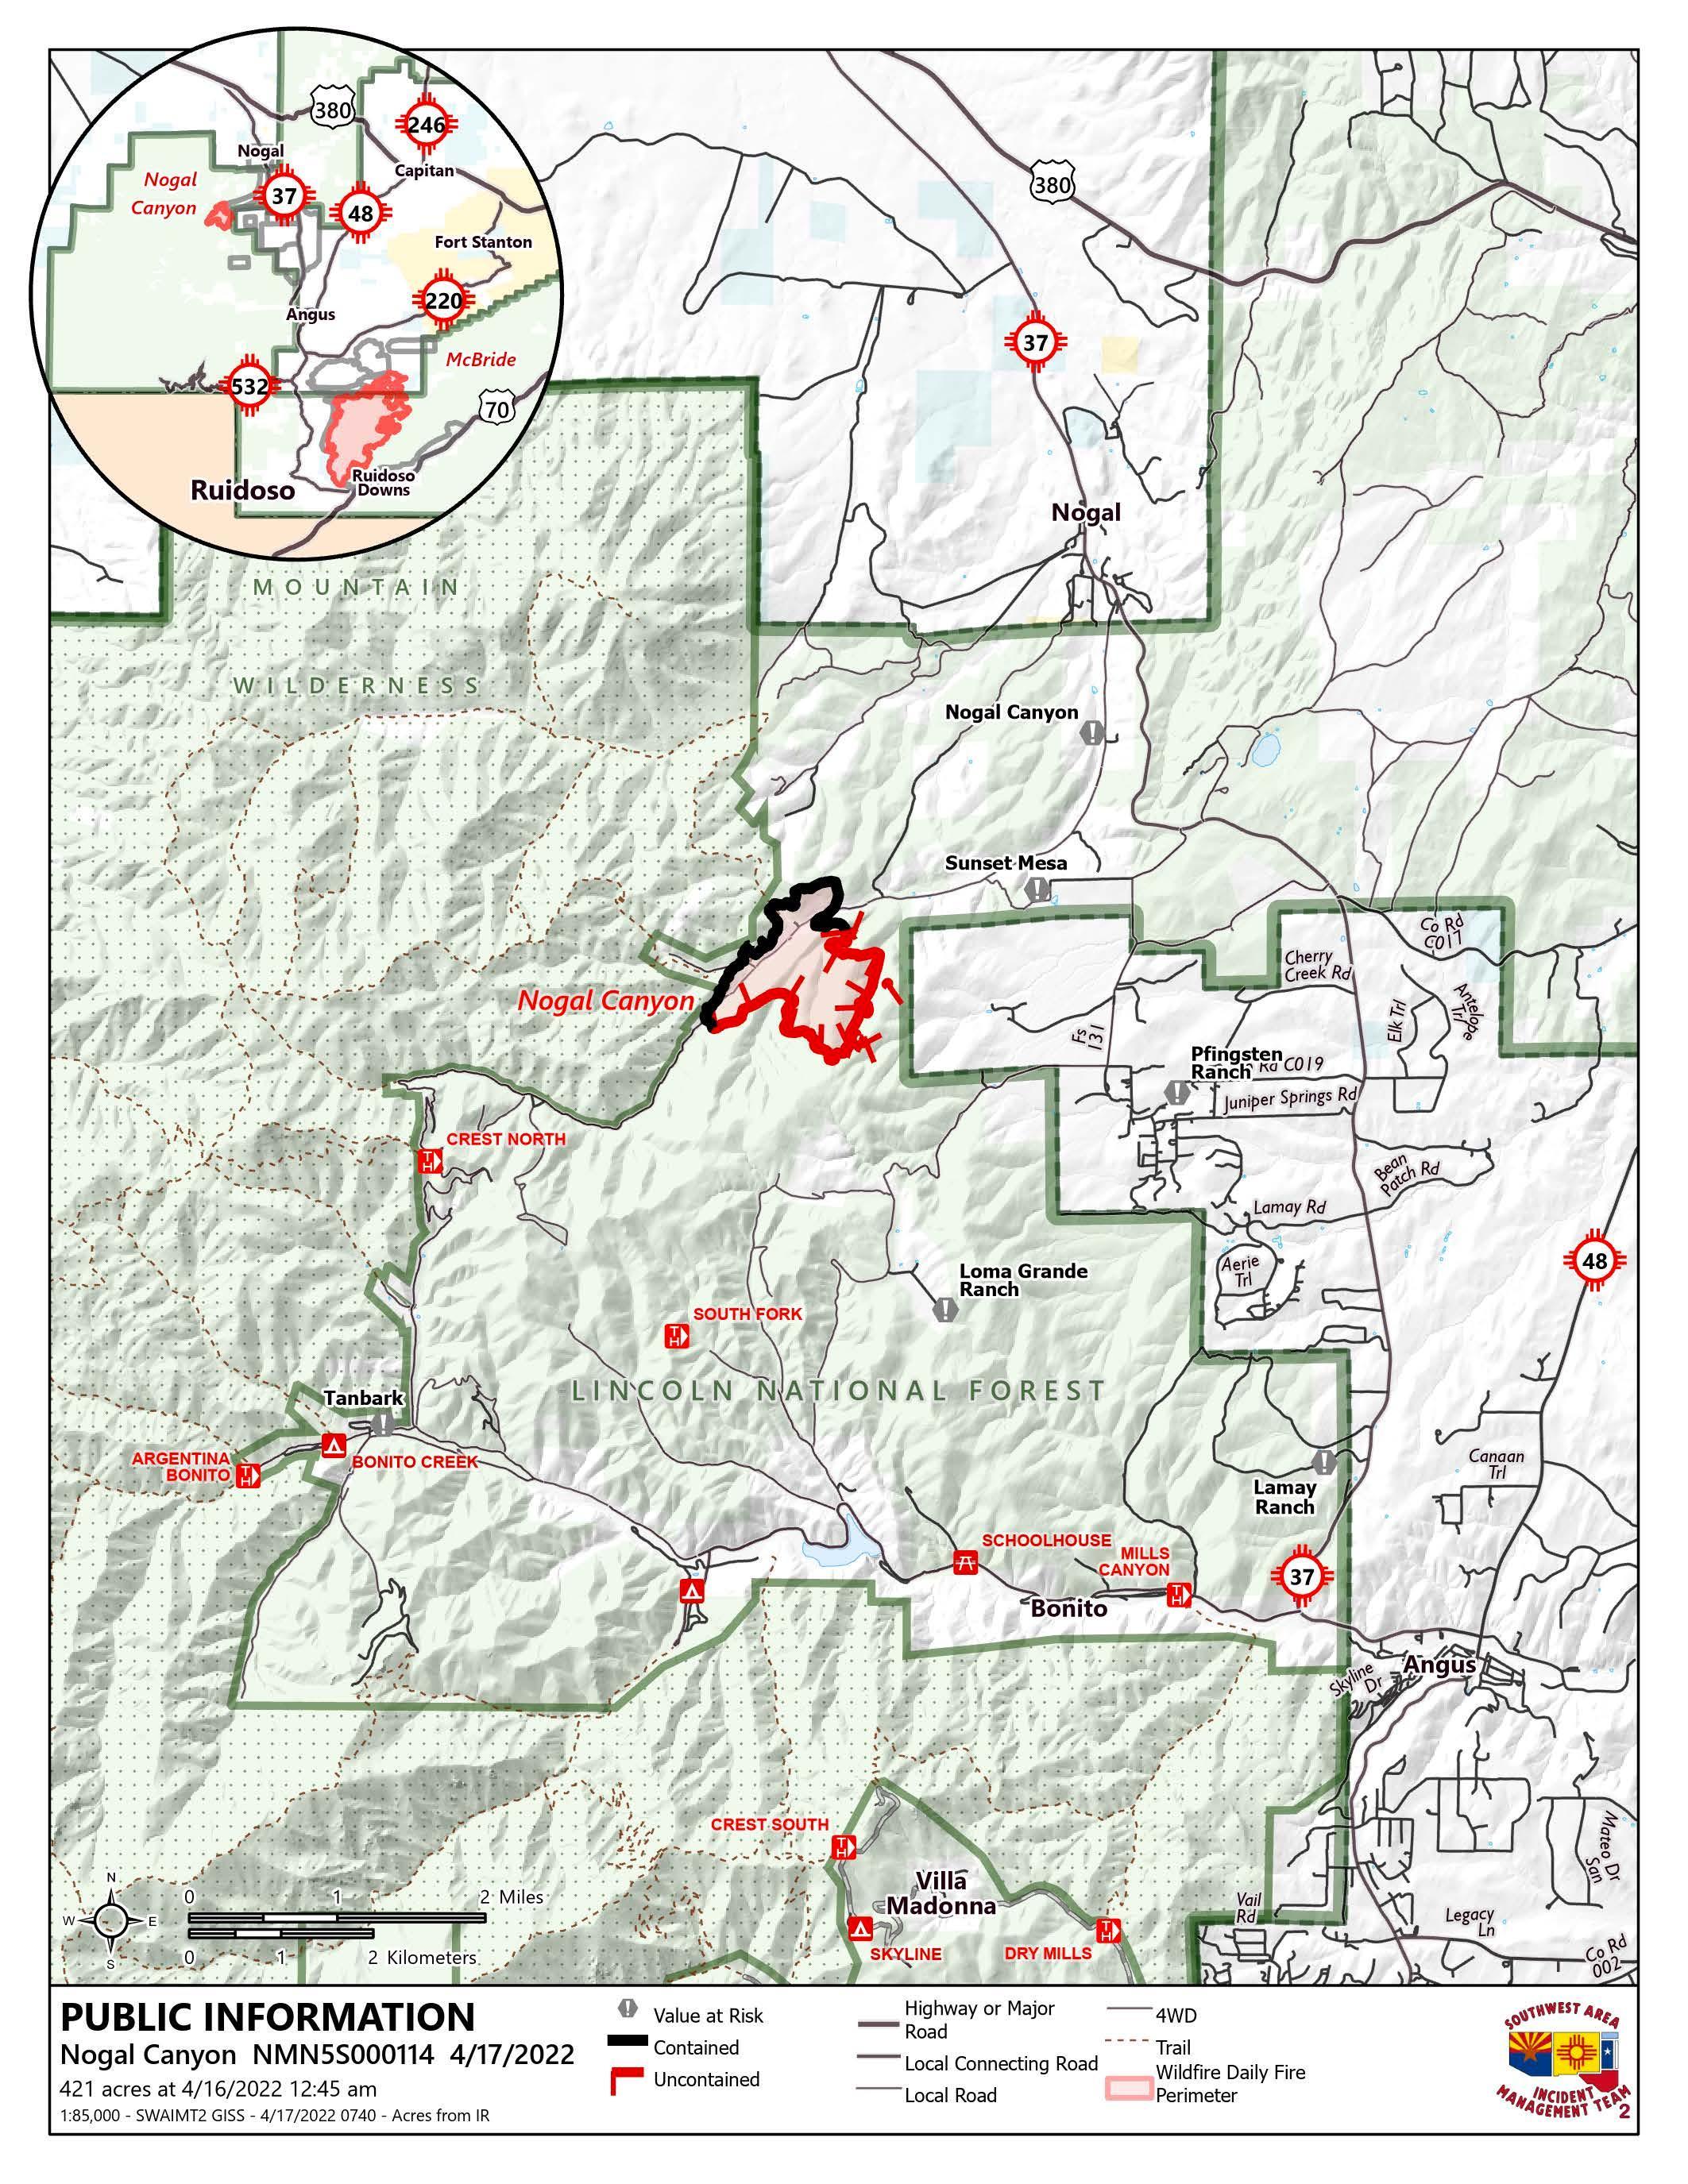 Nogal Fire Map April 17, 2022